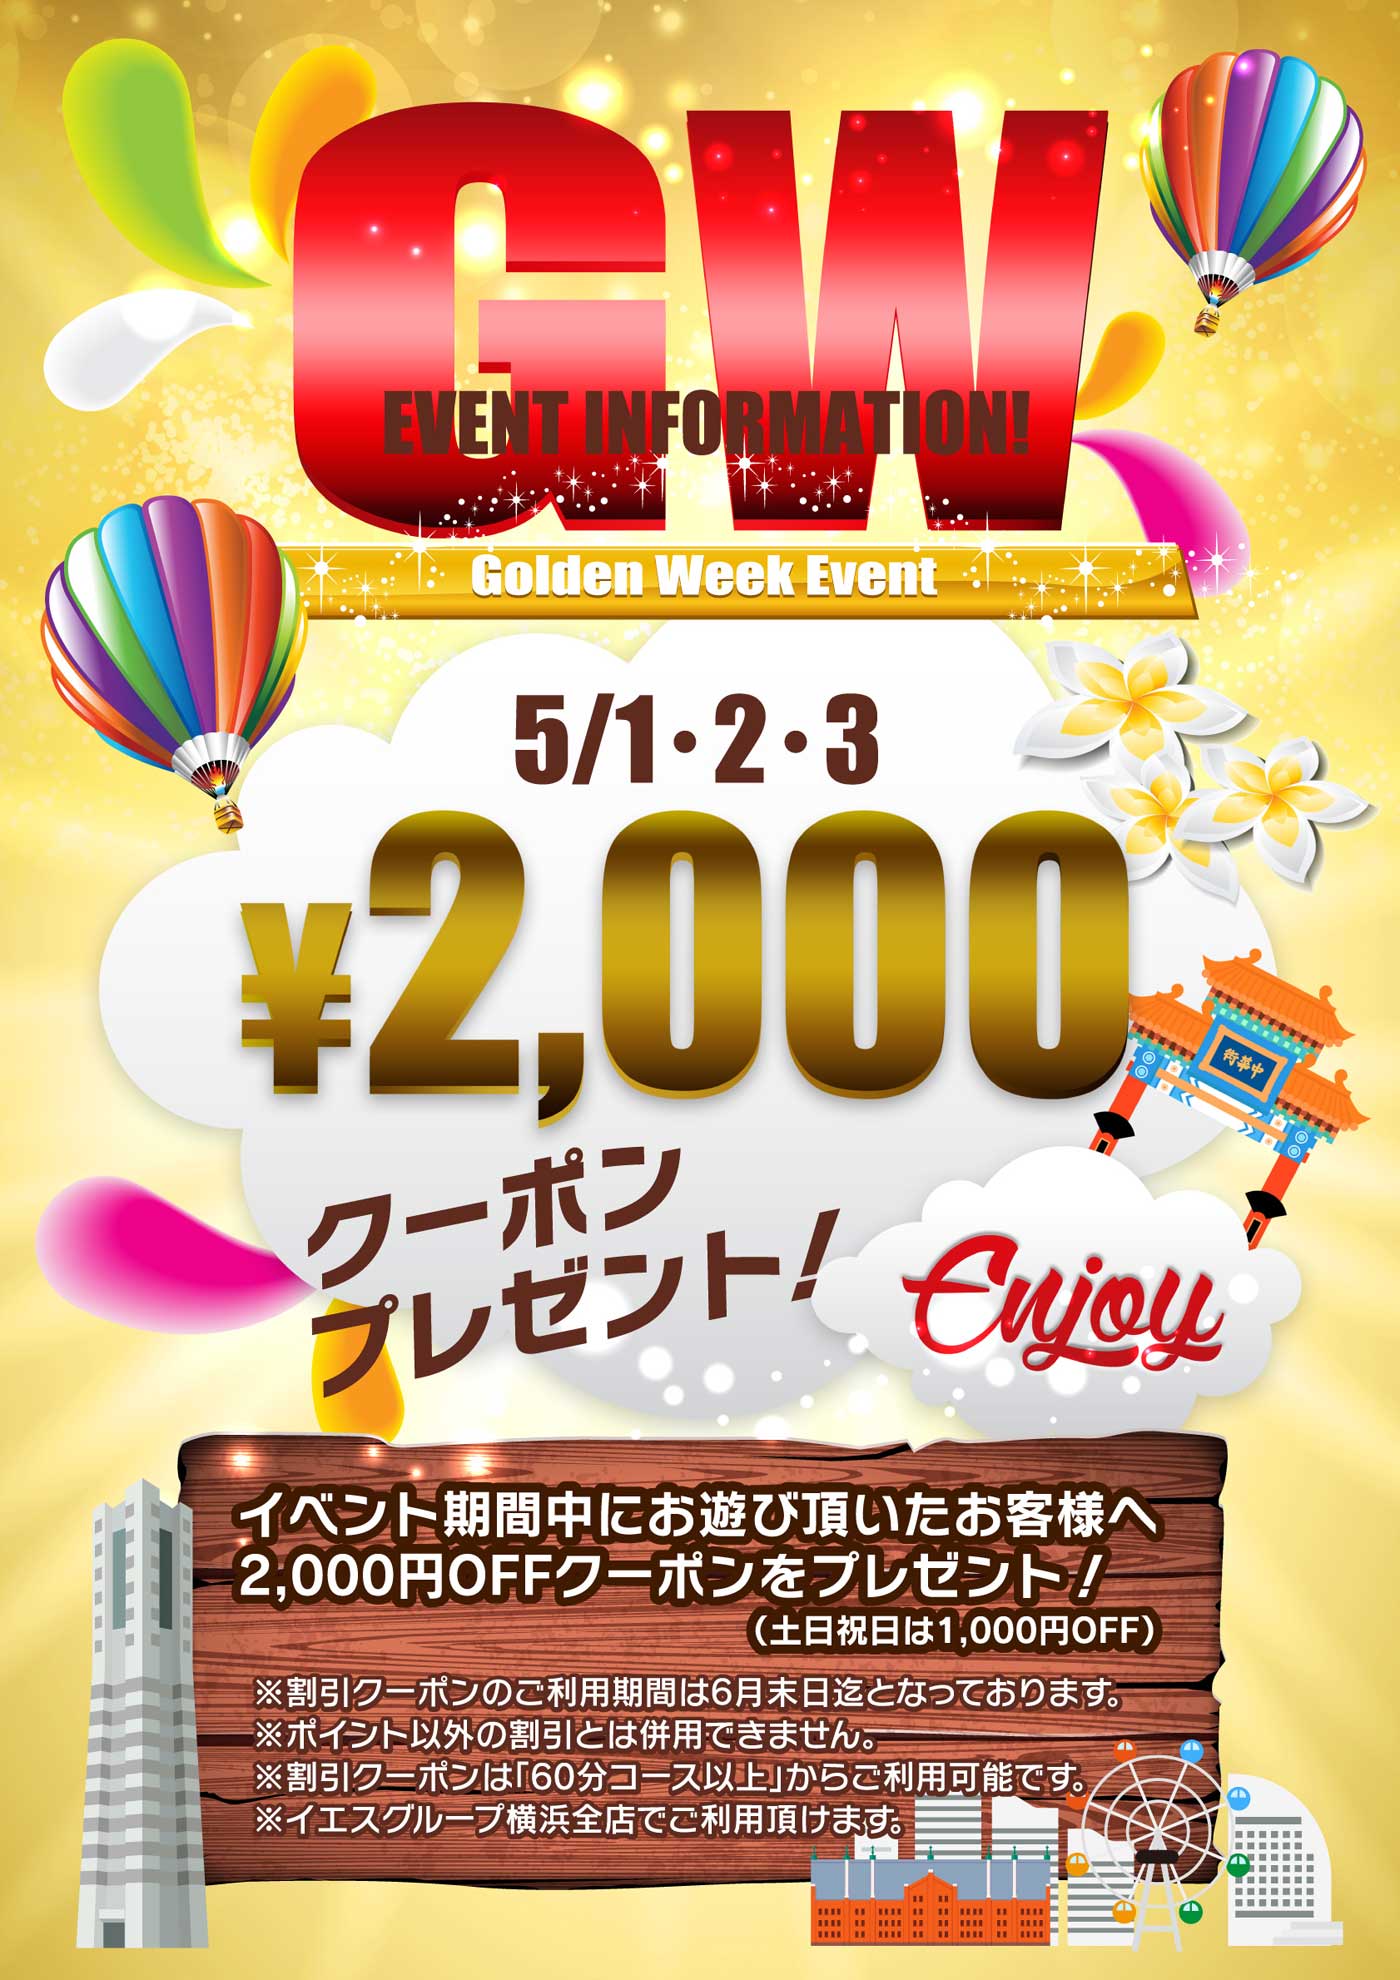 Golden Week Event